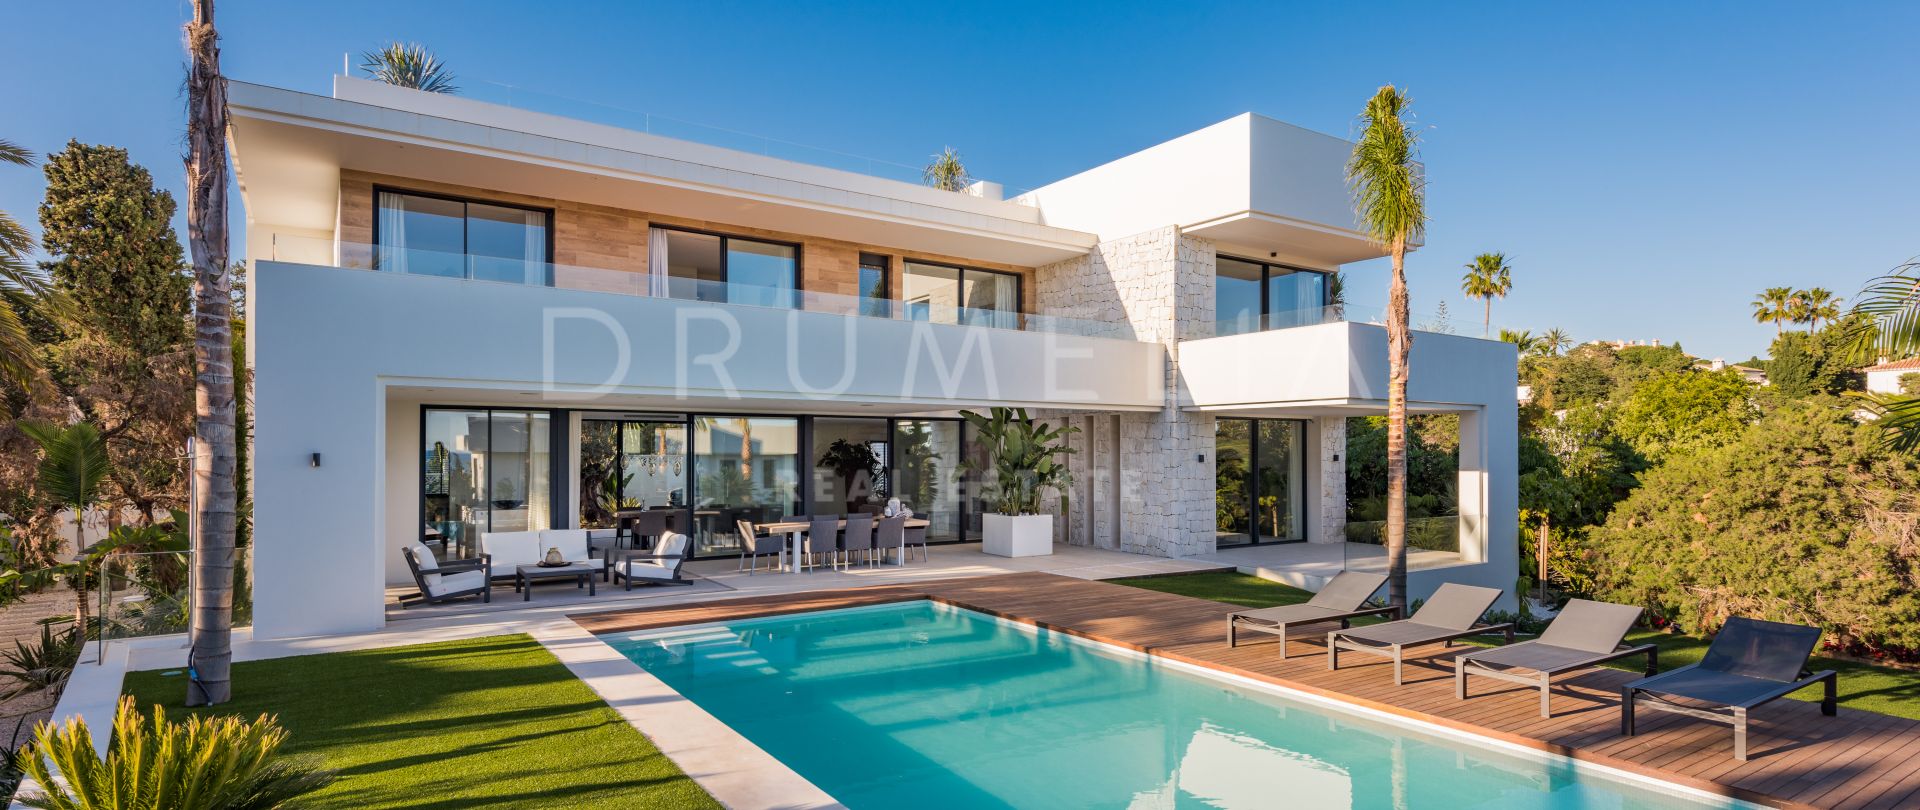 Chique luxe villa in moderne stijl in Marbella Oost, op een steenworp afstand van zandstranden en de haven van Cabopino